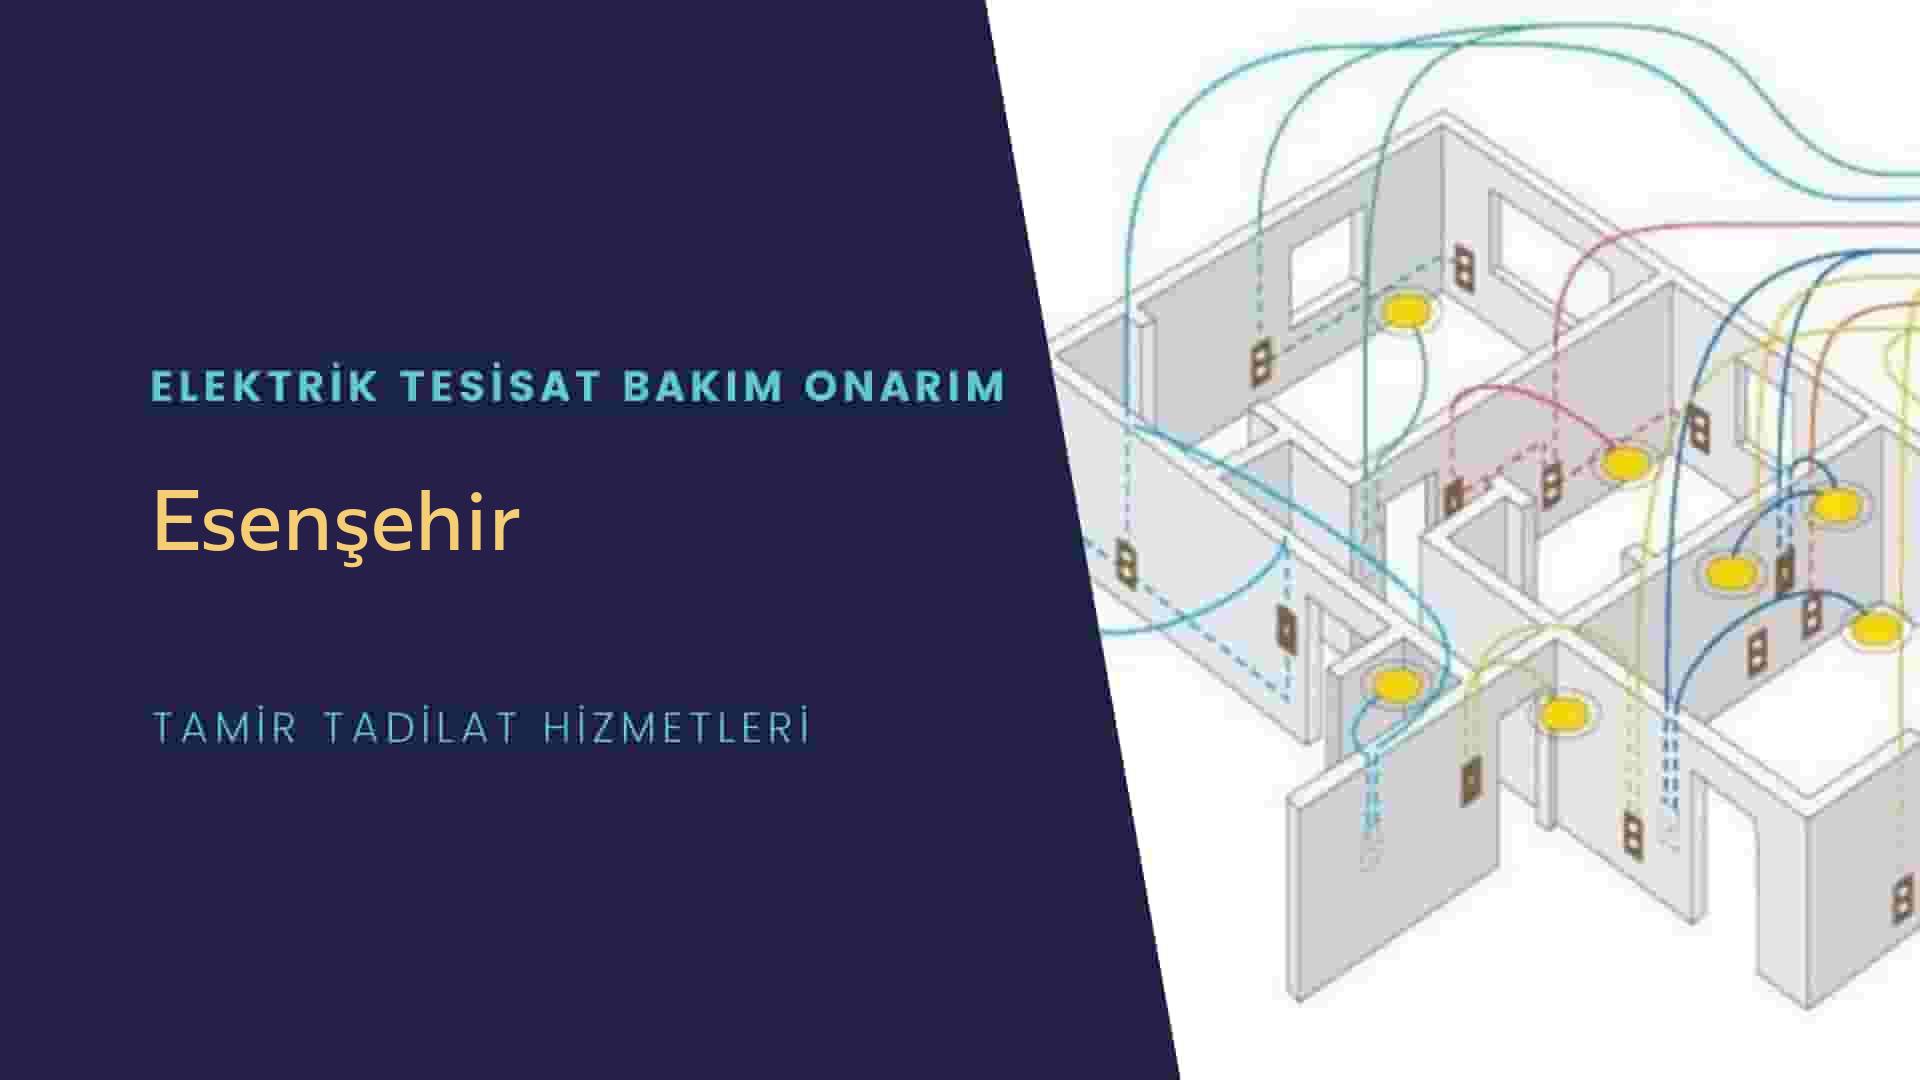 Esenşehir'de elektrik tesisatı ustalarımı arıyorsunuz doğru adrestenizi Esenşehir elektrik tesisatı ustalarımız 7/24 sizlere hizmet vermekten mutluluk duyar.